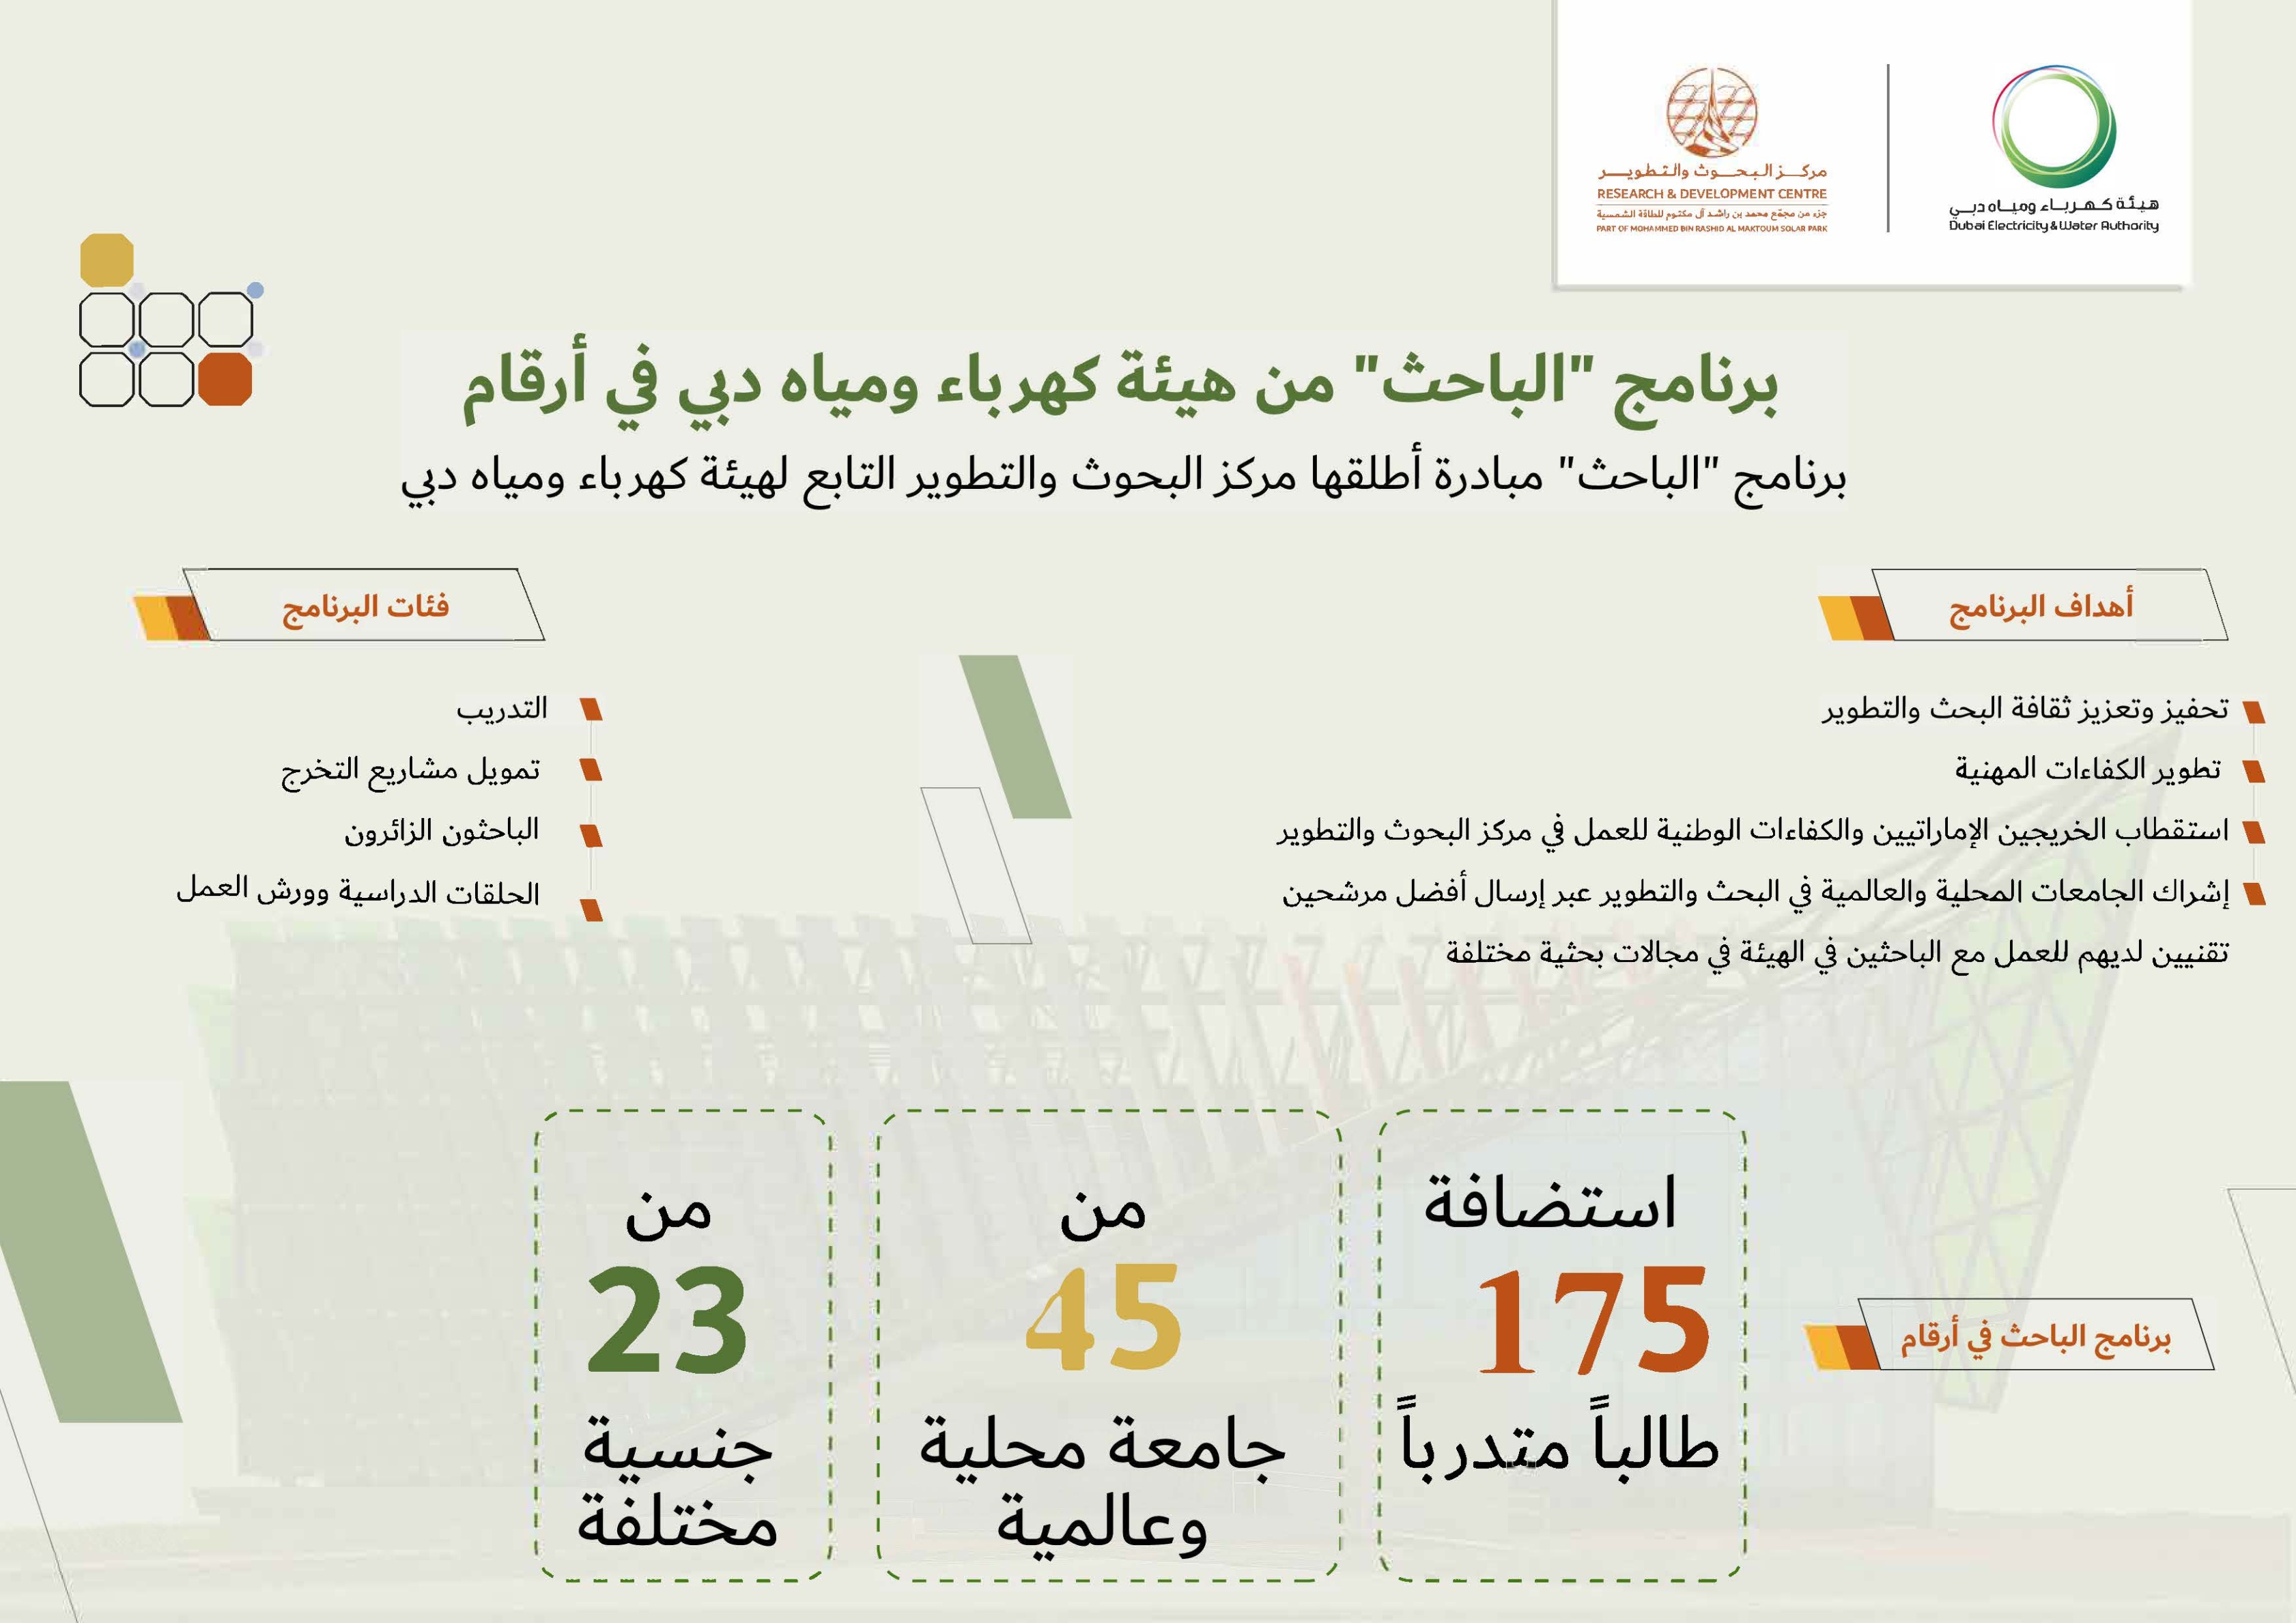 برنامج "الباحث" من كهرباء دبي يصقل المهارات البحثية والمهنية للمواهب والكفاءات المواطنة